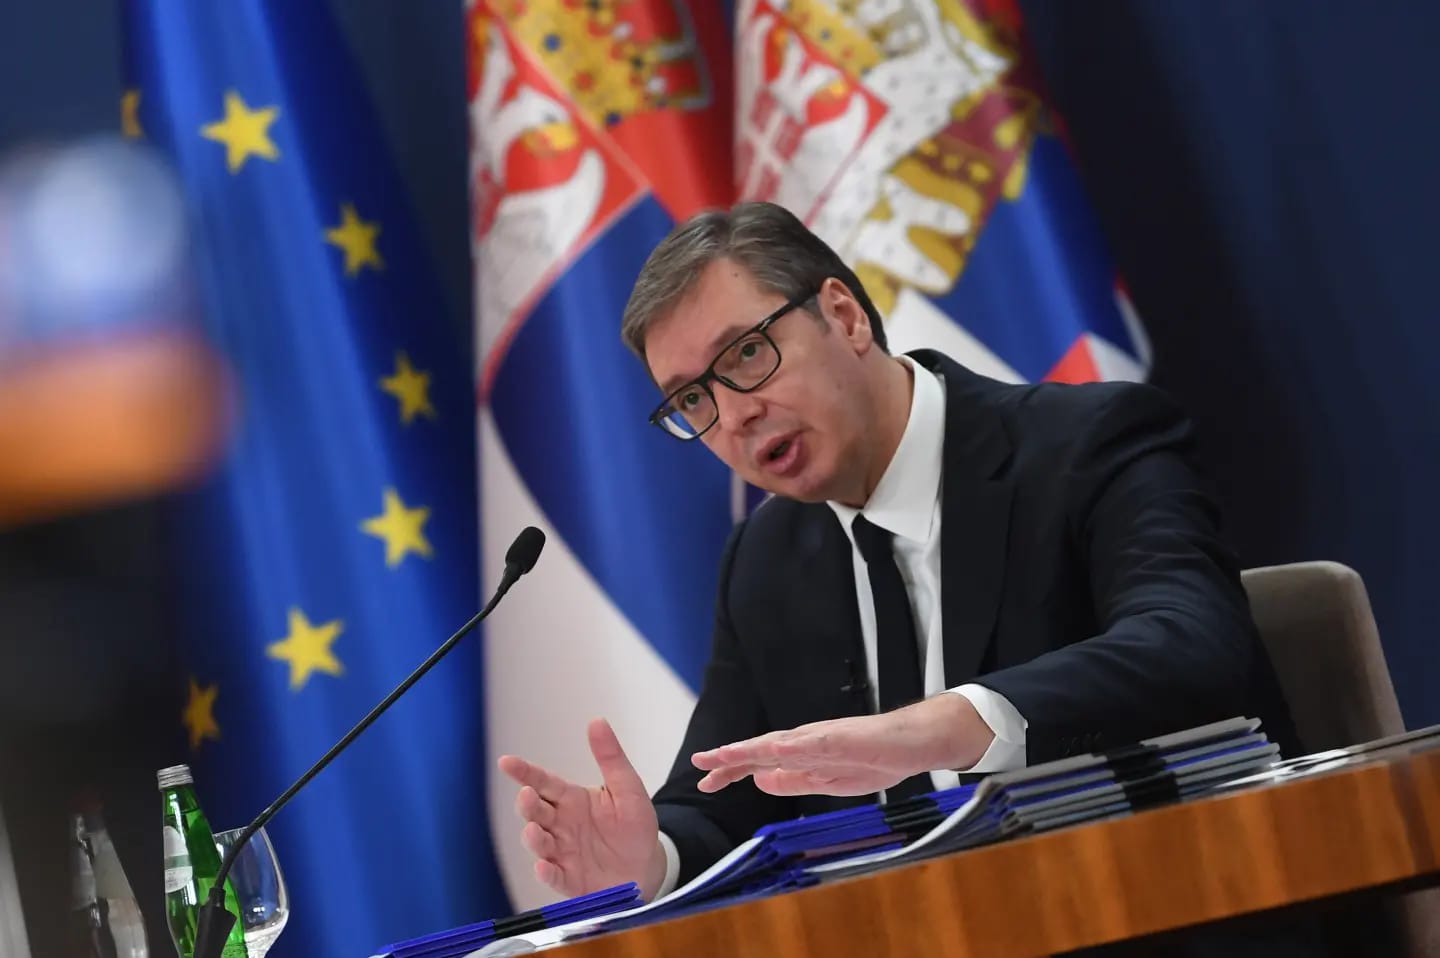 Председник Републике Србије Александар Вучић започео је обраћање грађанима најавом да ће их обавестити о свим важним политичким догађајима.